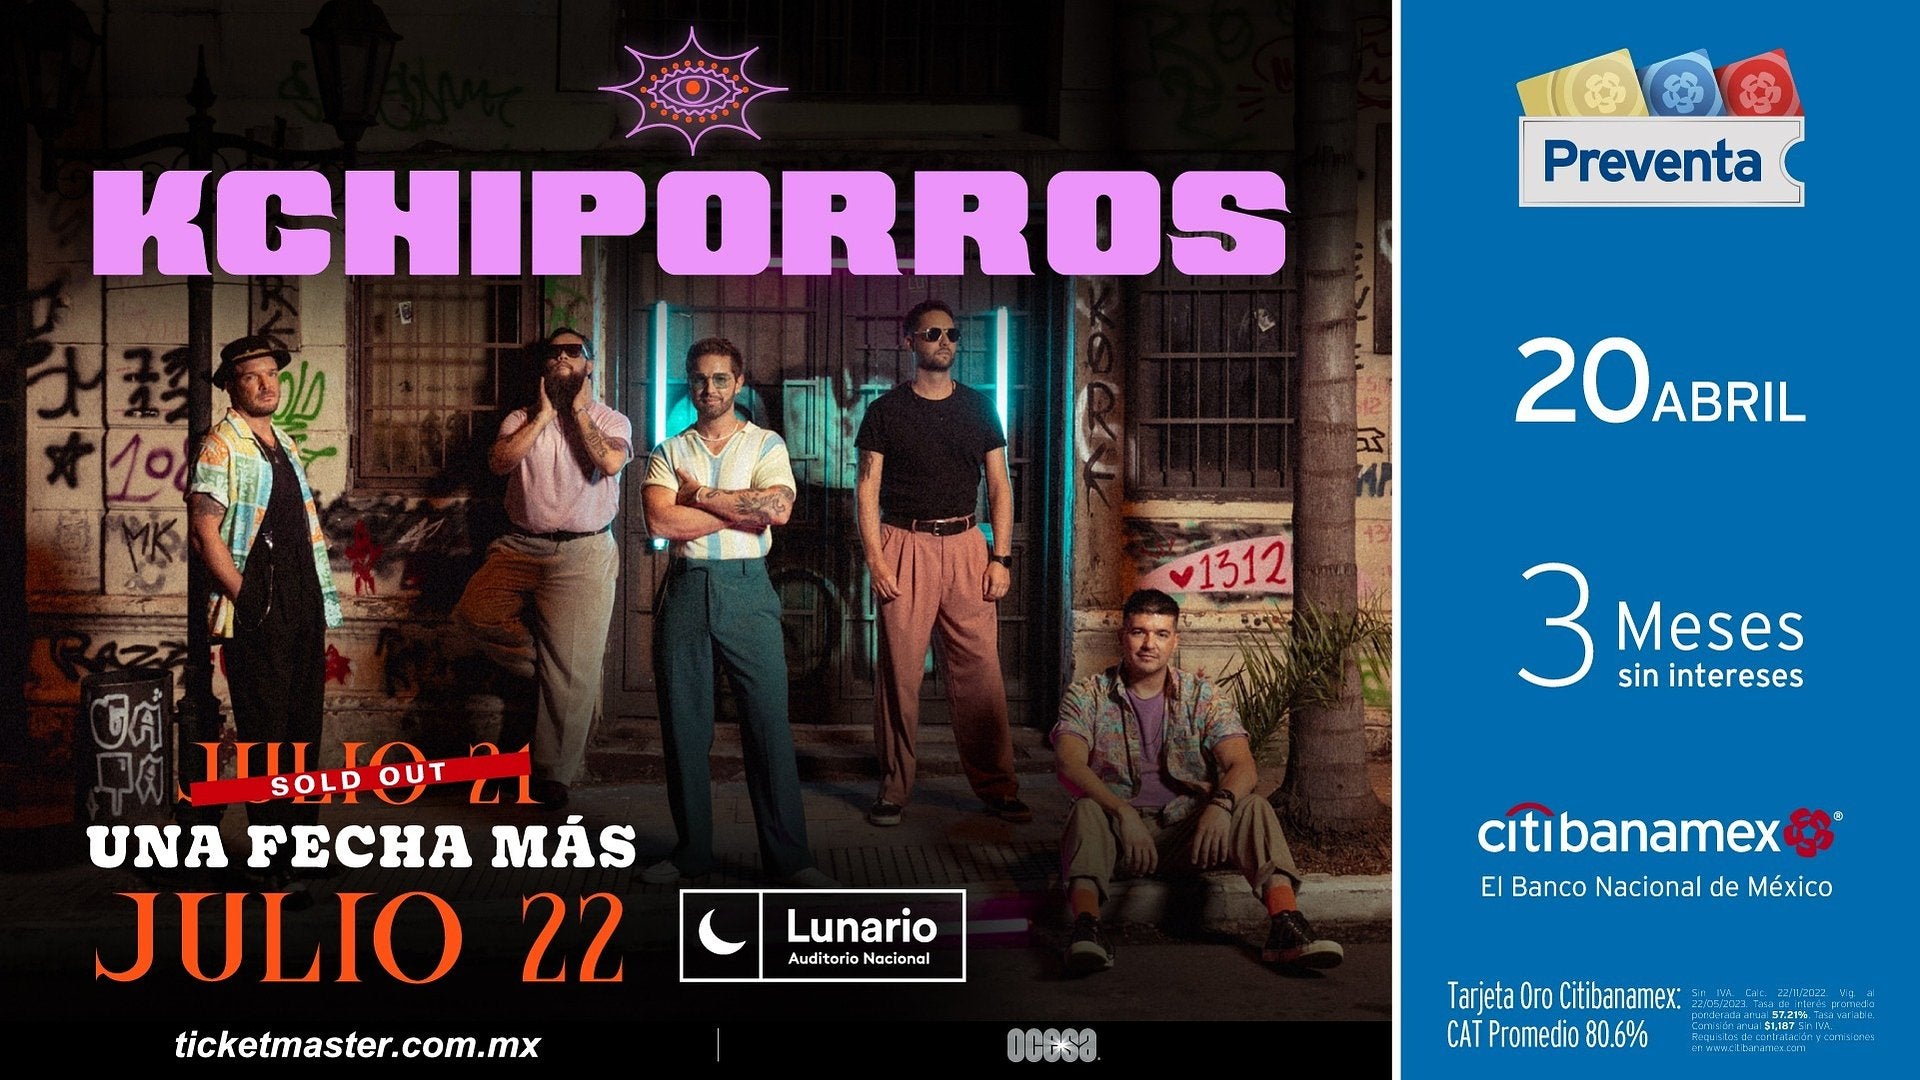 Tras sold out en su primera fecha, Kchiporros dará otro concierto en el Lunario